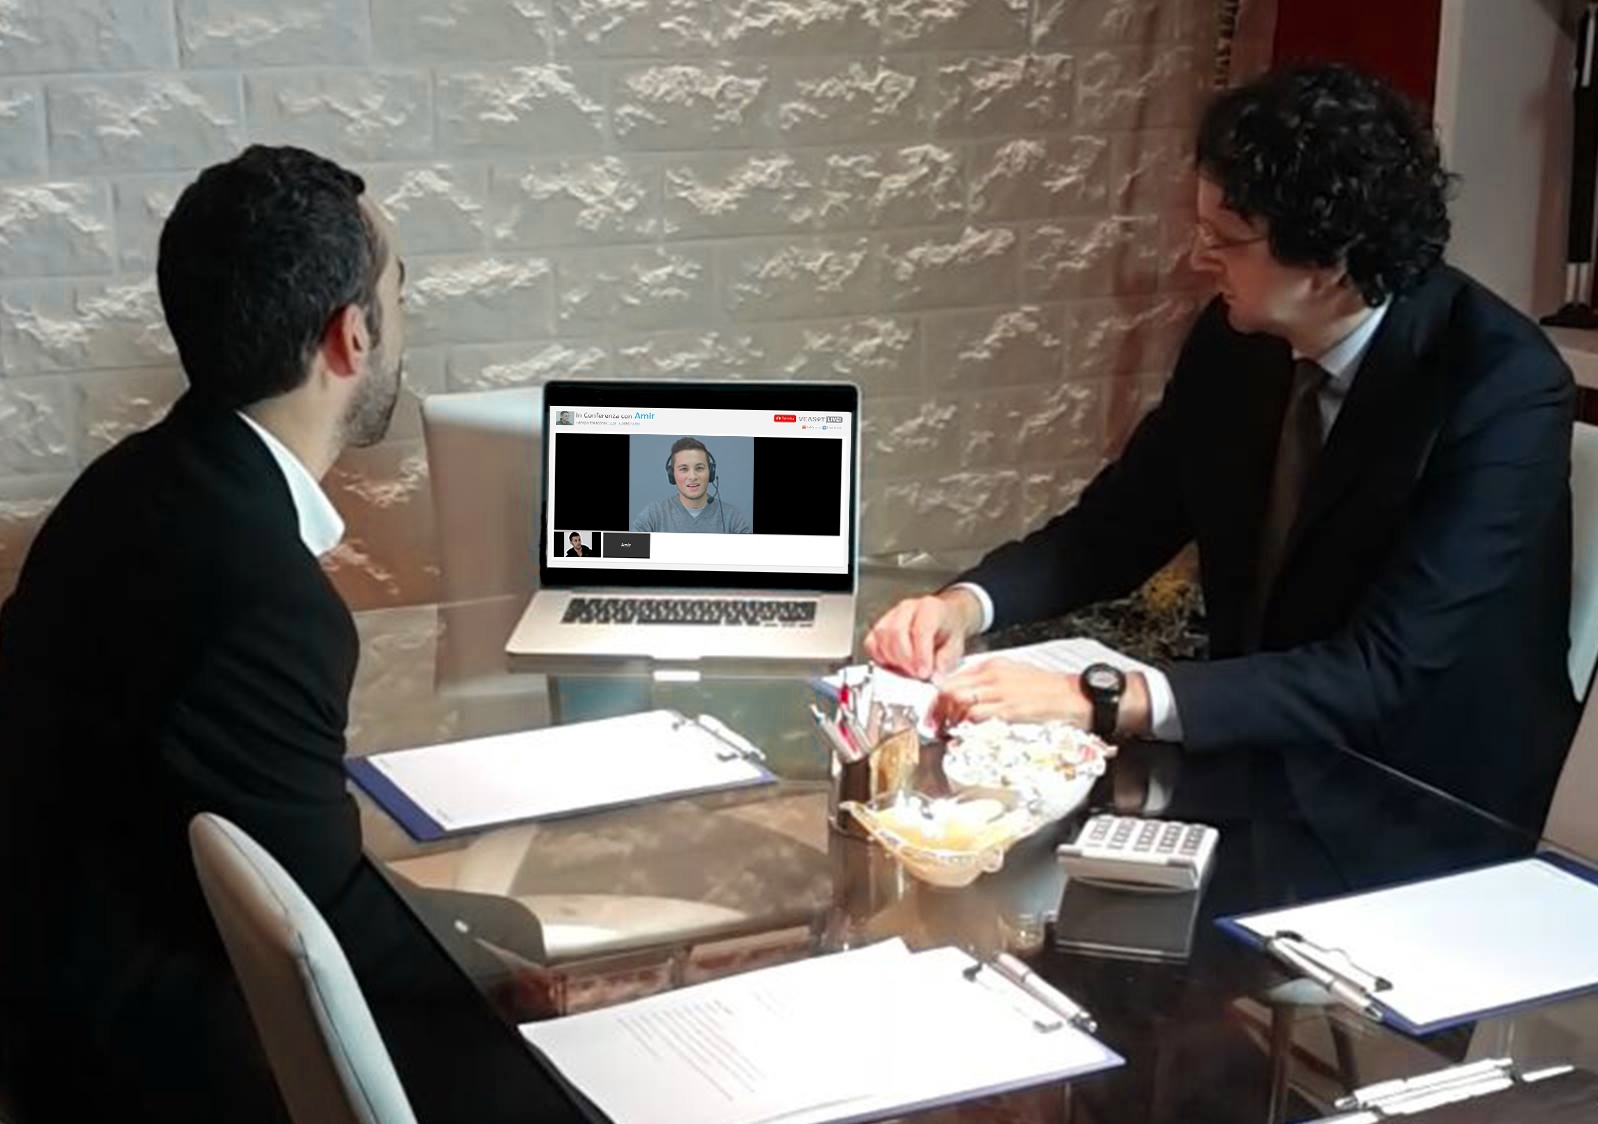 Immagine simulazione videointerprete cliente e avvocato